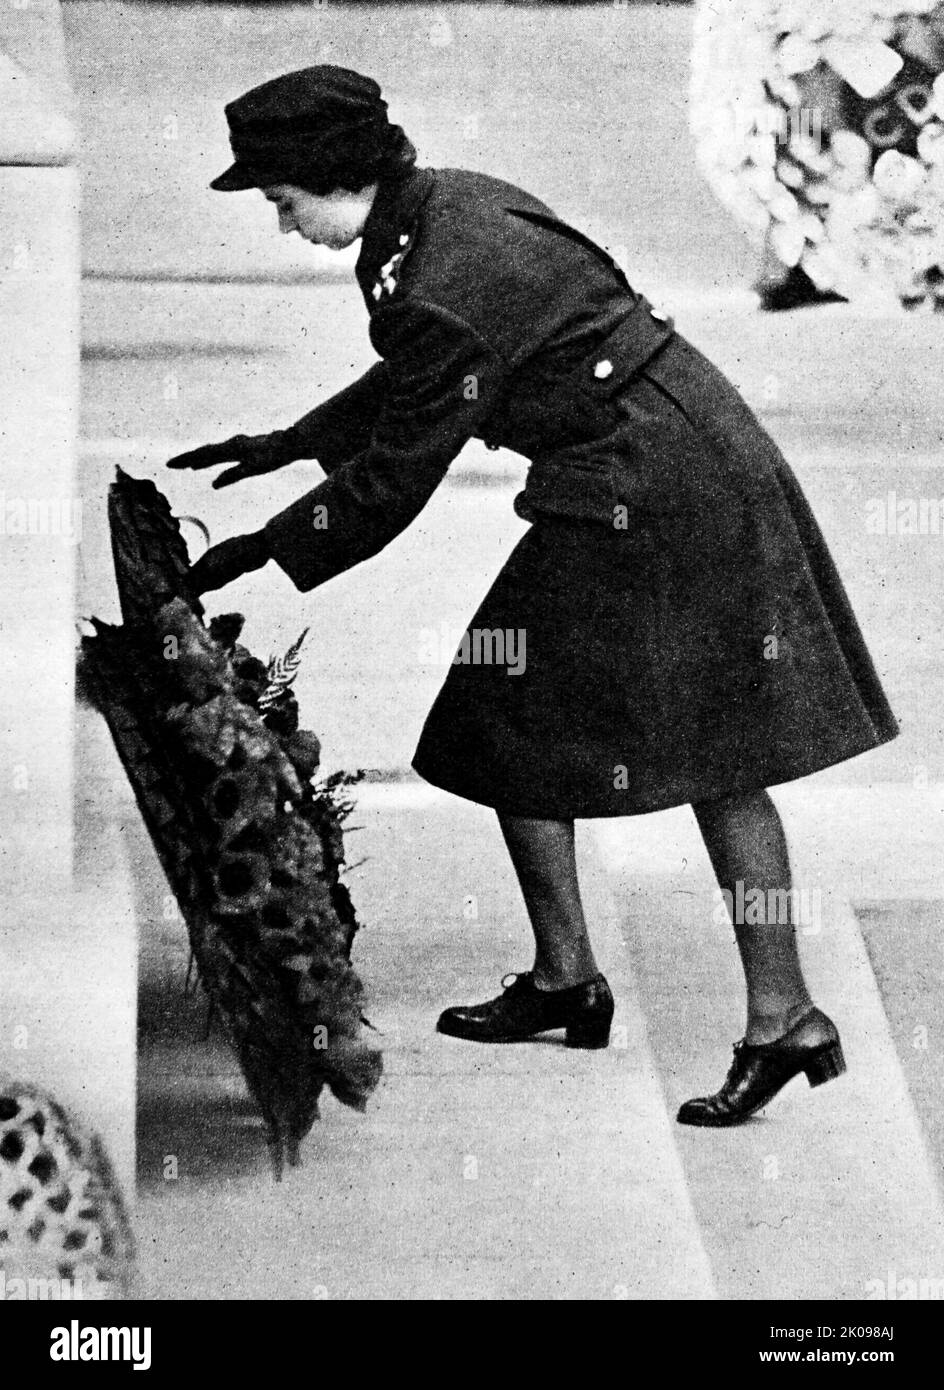 Ihre Königliche Hoheit Prinzessin Elizabeth legte 1949 einen Kranz im Cenotaph nieder. Prinzessin Elizabeth. Elizabeth II. (Elizabeth Alexandra Mary; geboren am 21. April 1926) ist Königin des Vereinigten Königreichs und 15 anderer Commonwealth-Bereiche. Sie ist die ältere Tochter von König Georg VI. Und Königin Elizabeth. Stockfoto